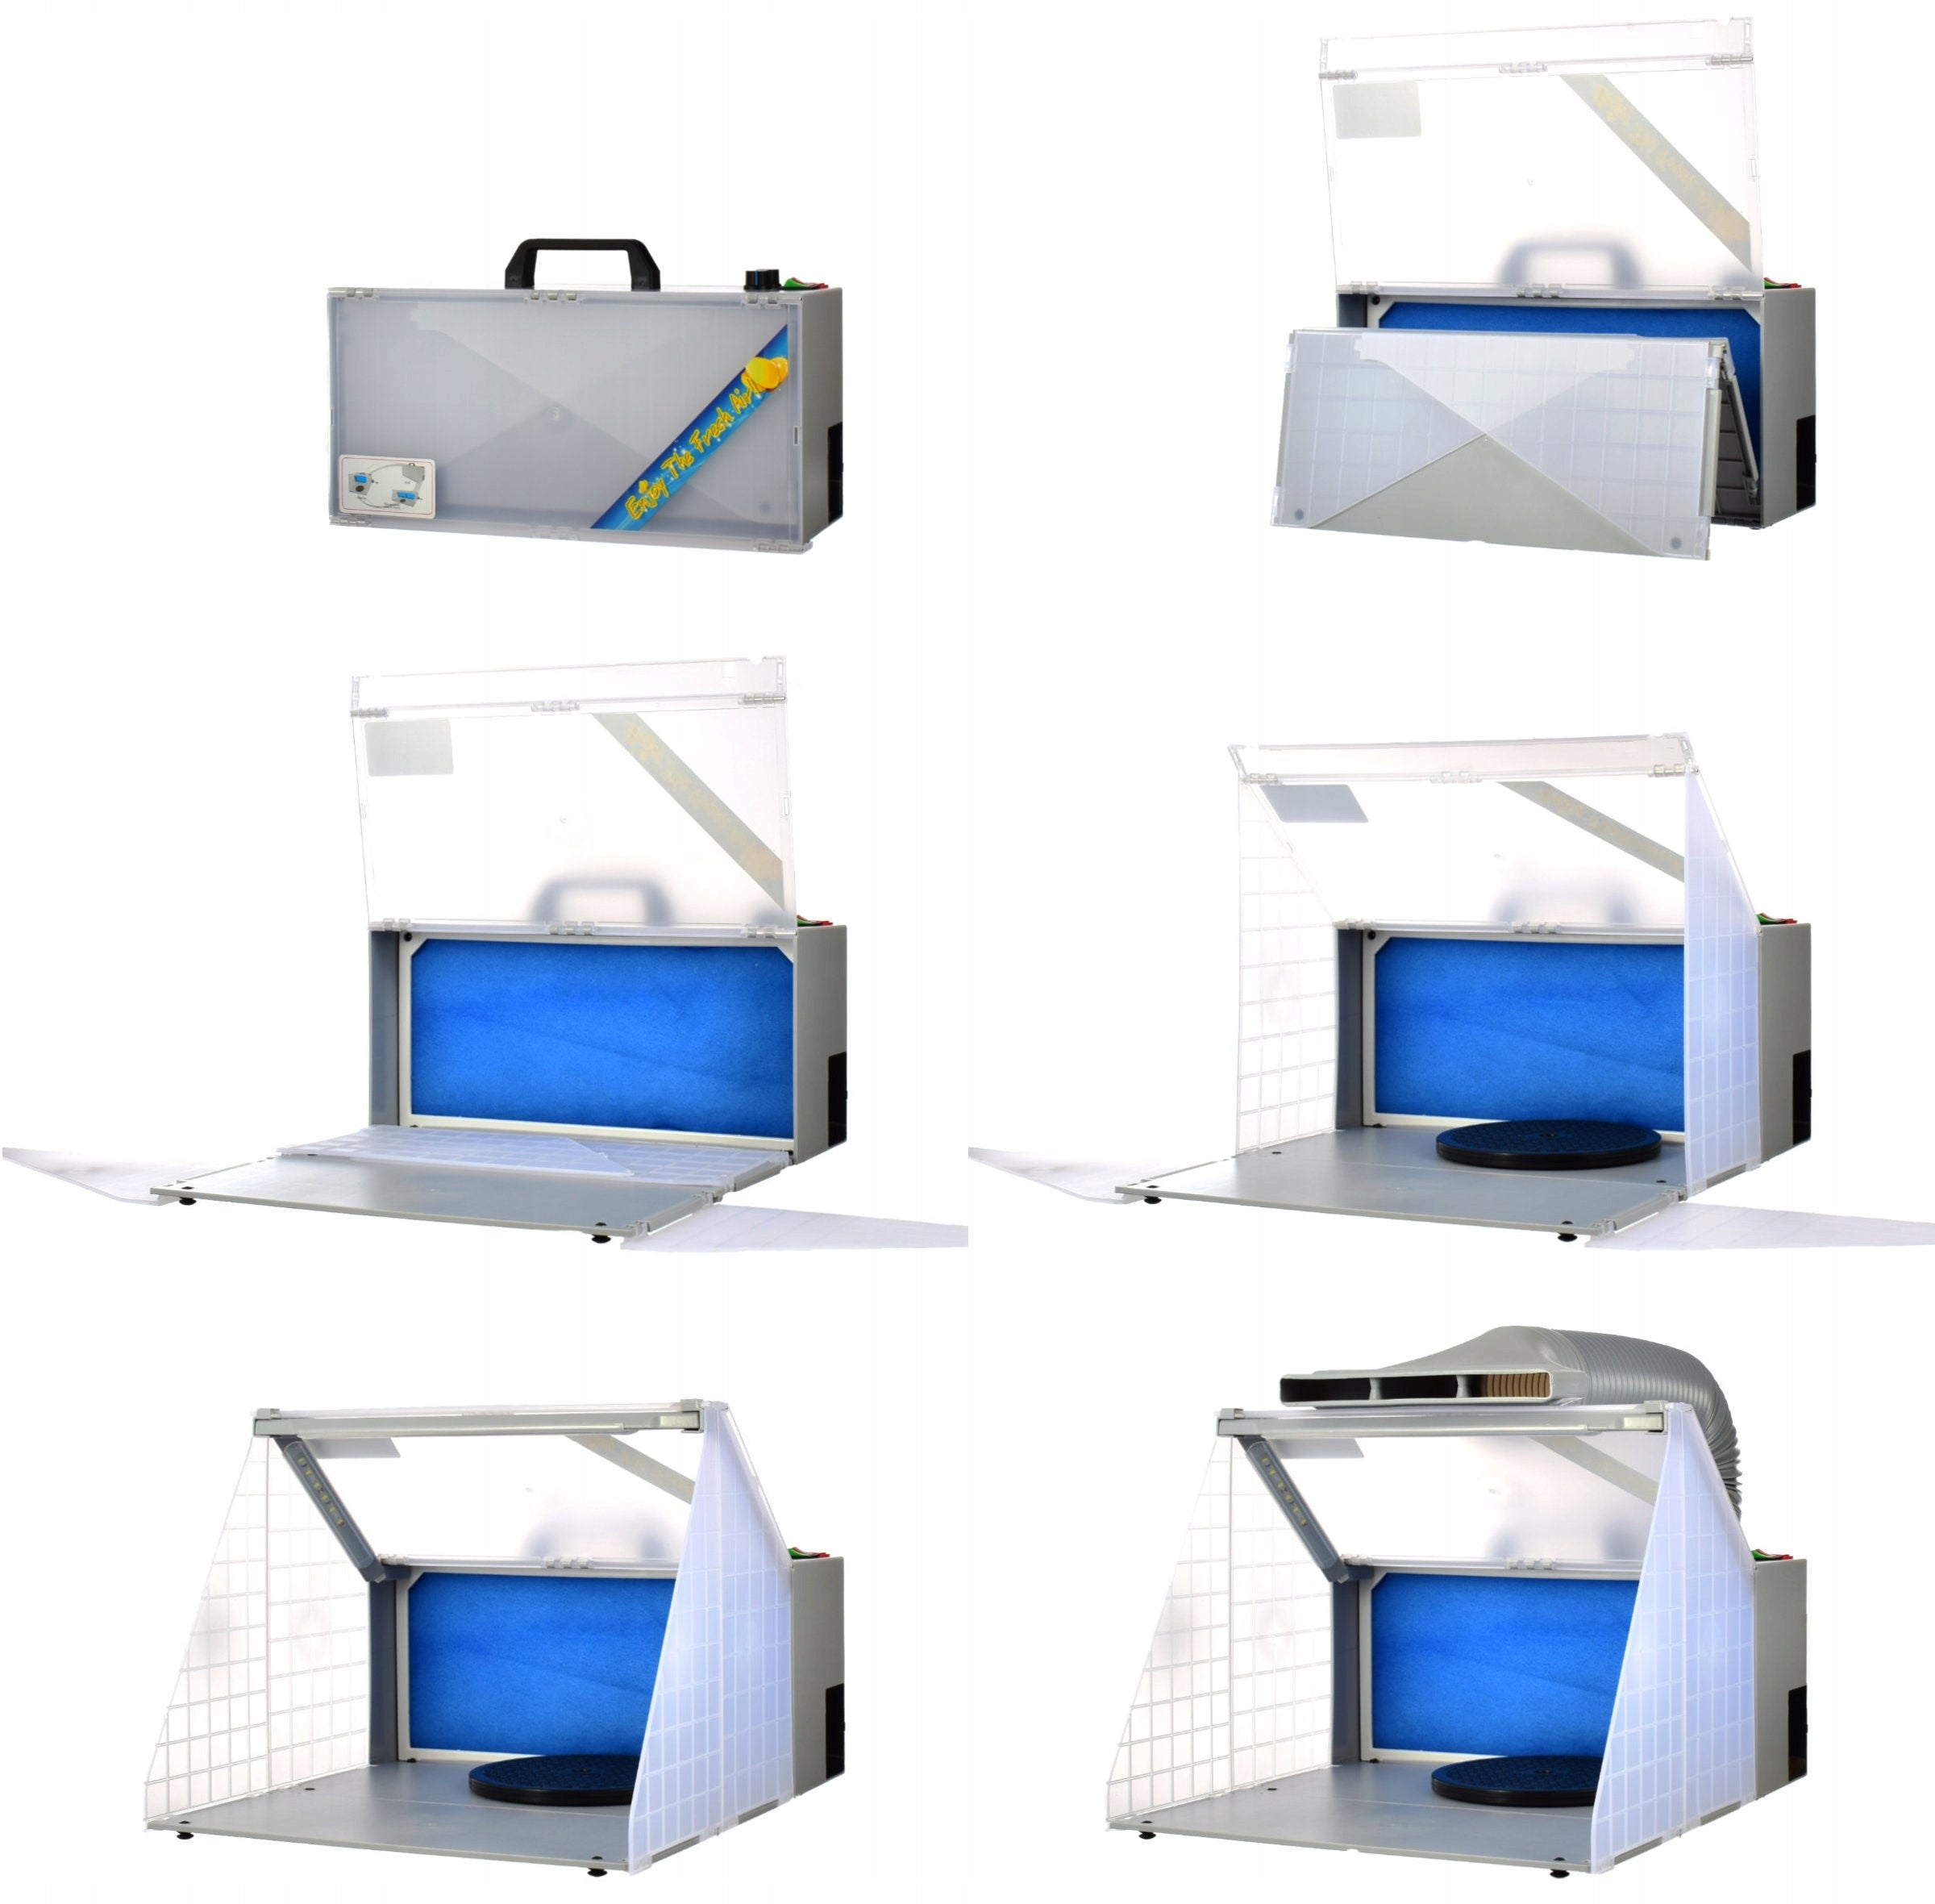 Modelovací kabina - Stříkací box HS-E420DCLK - s osvětlením LED, odsáváním a rotačním stojanem - pro airbrush modeláře